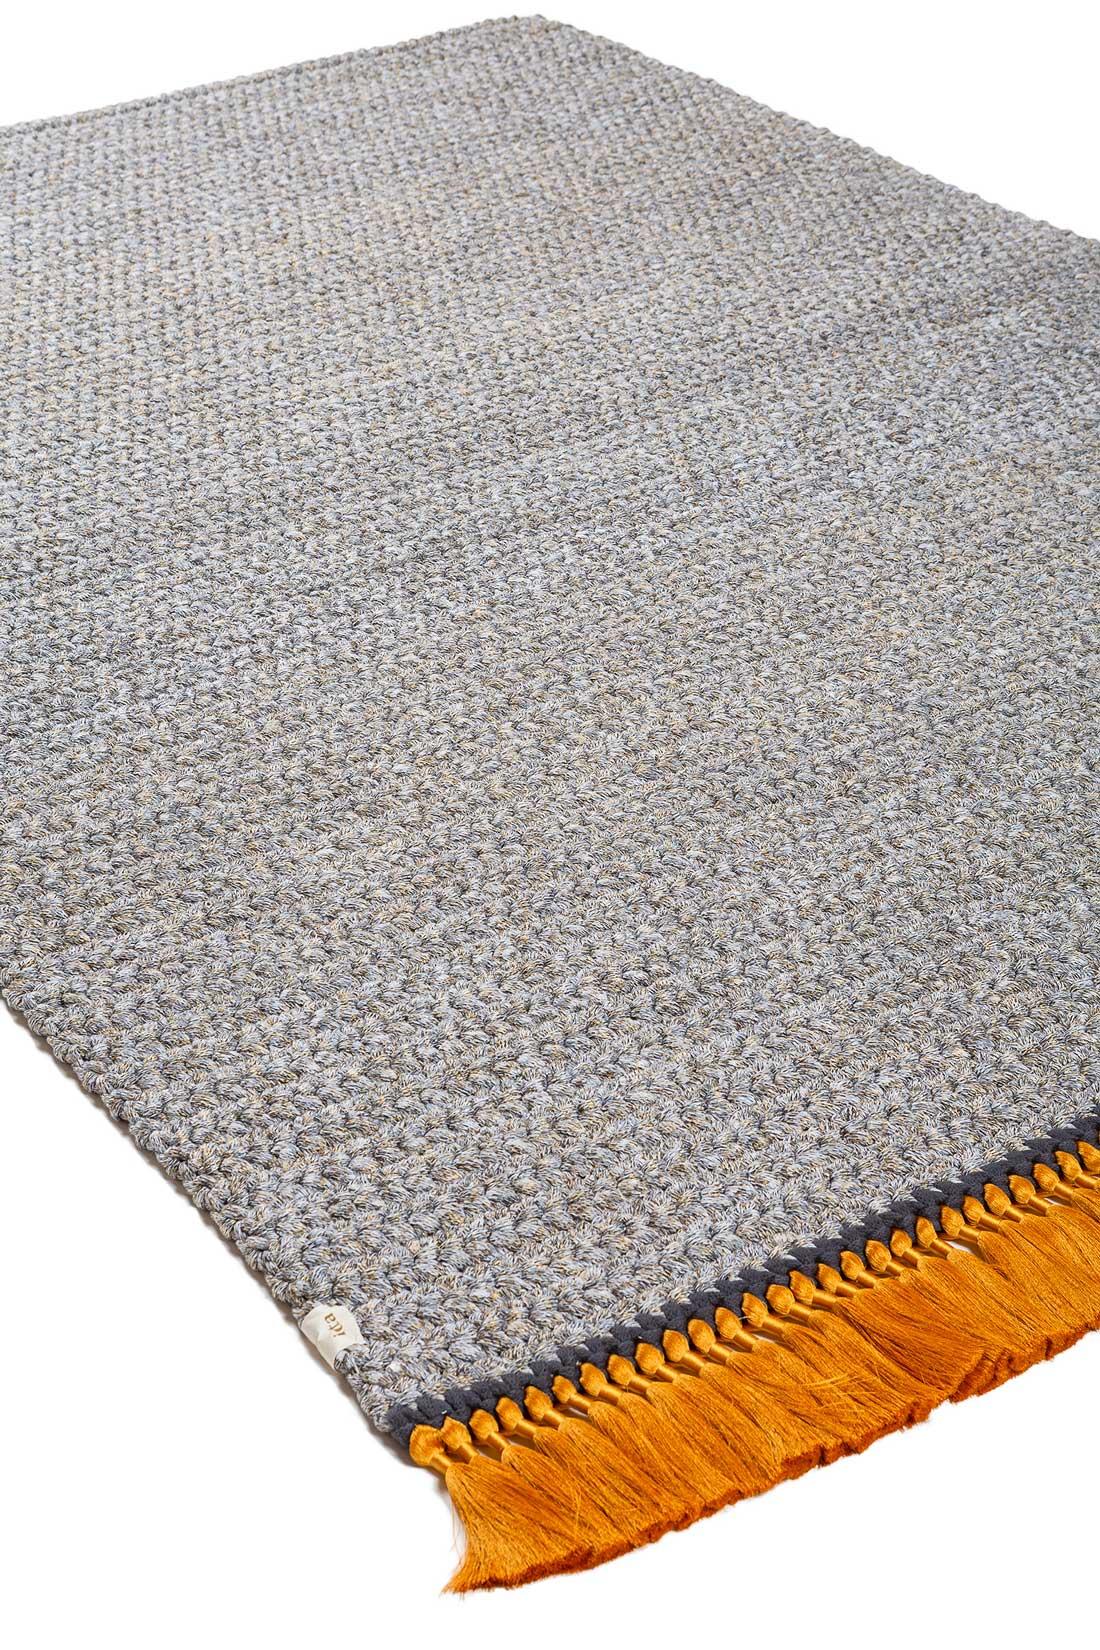 Les tapis IOTA sont épais, doux, tricotés à la main et luxueux, 3 fois plus épais qu'un tapis standard. Les tapis Two Tone medium créent un dégradé subtil qui illuminera n'importe quel espace, convenant aussi bien à un coin intime dans l'espace de